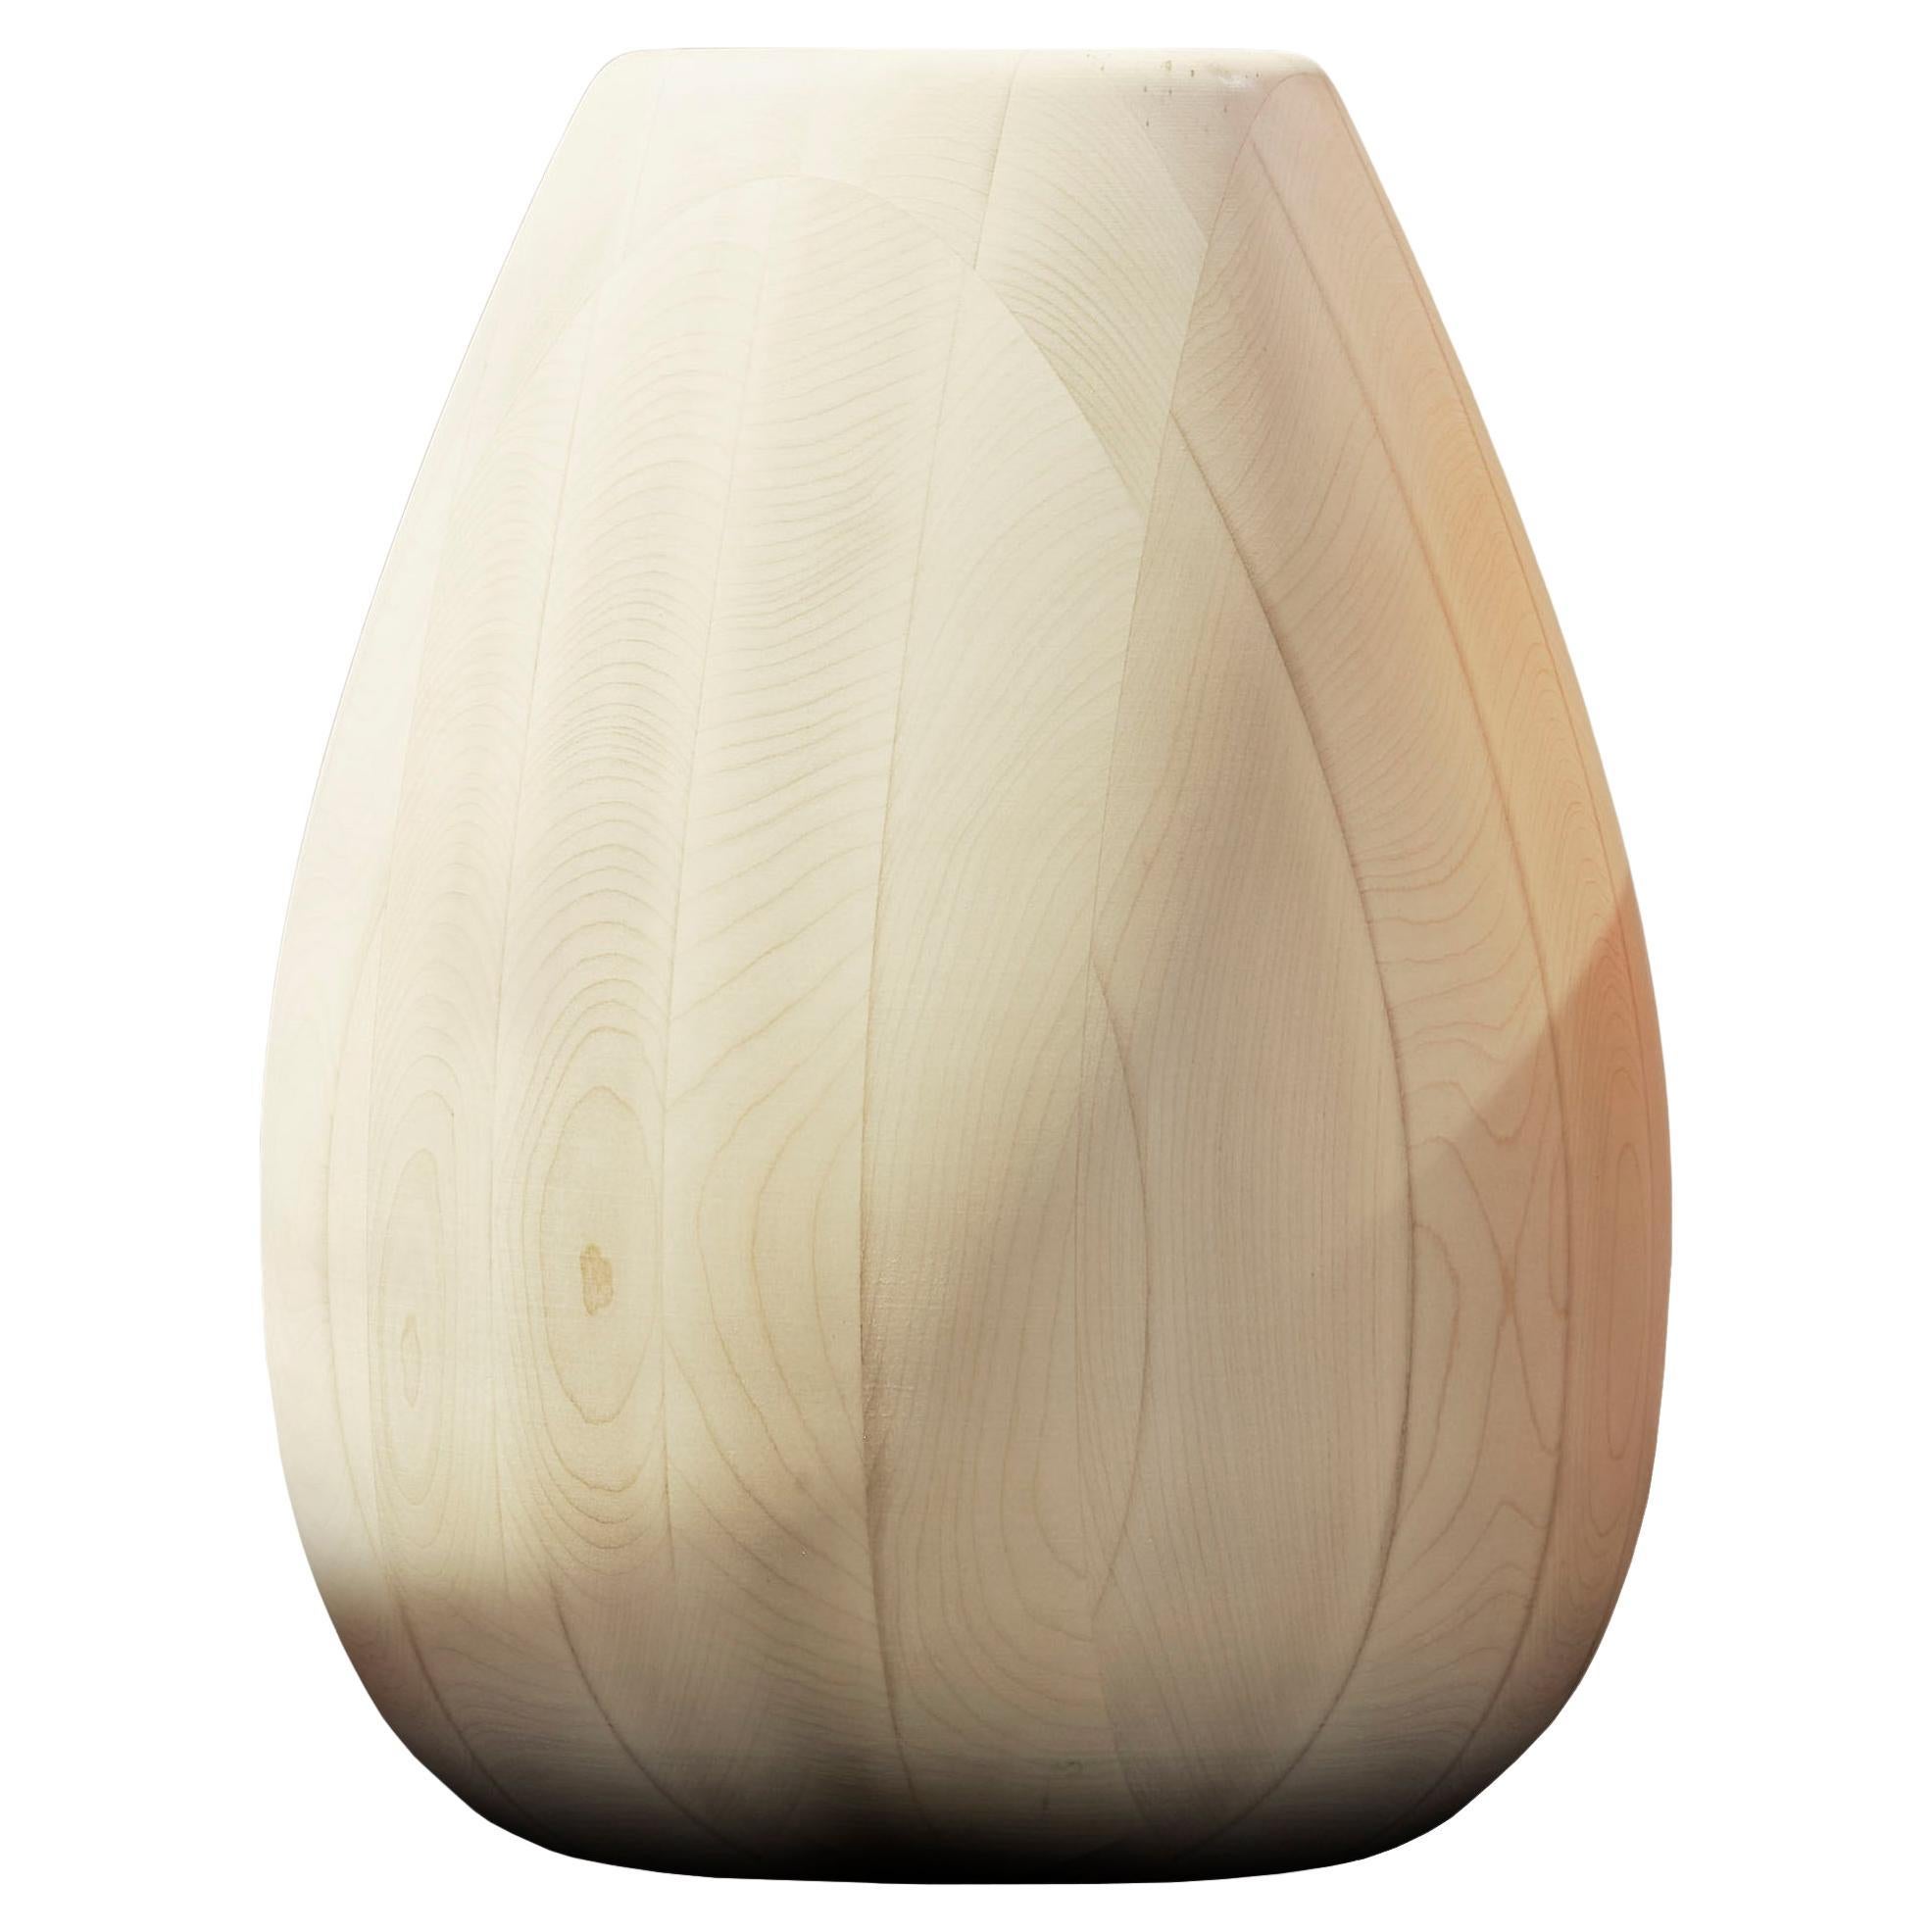 Vase en bois d'érable h25 design Franco Albini - édité b Officina della Scala